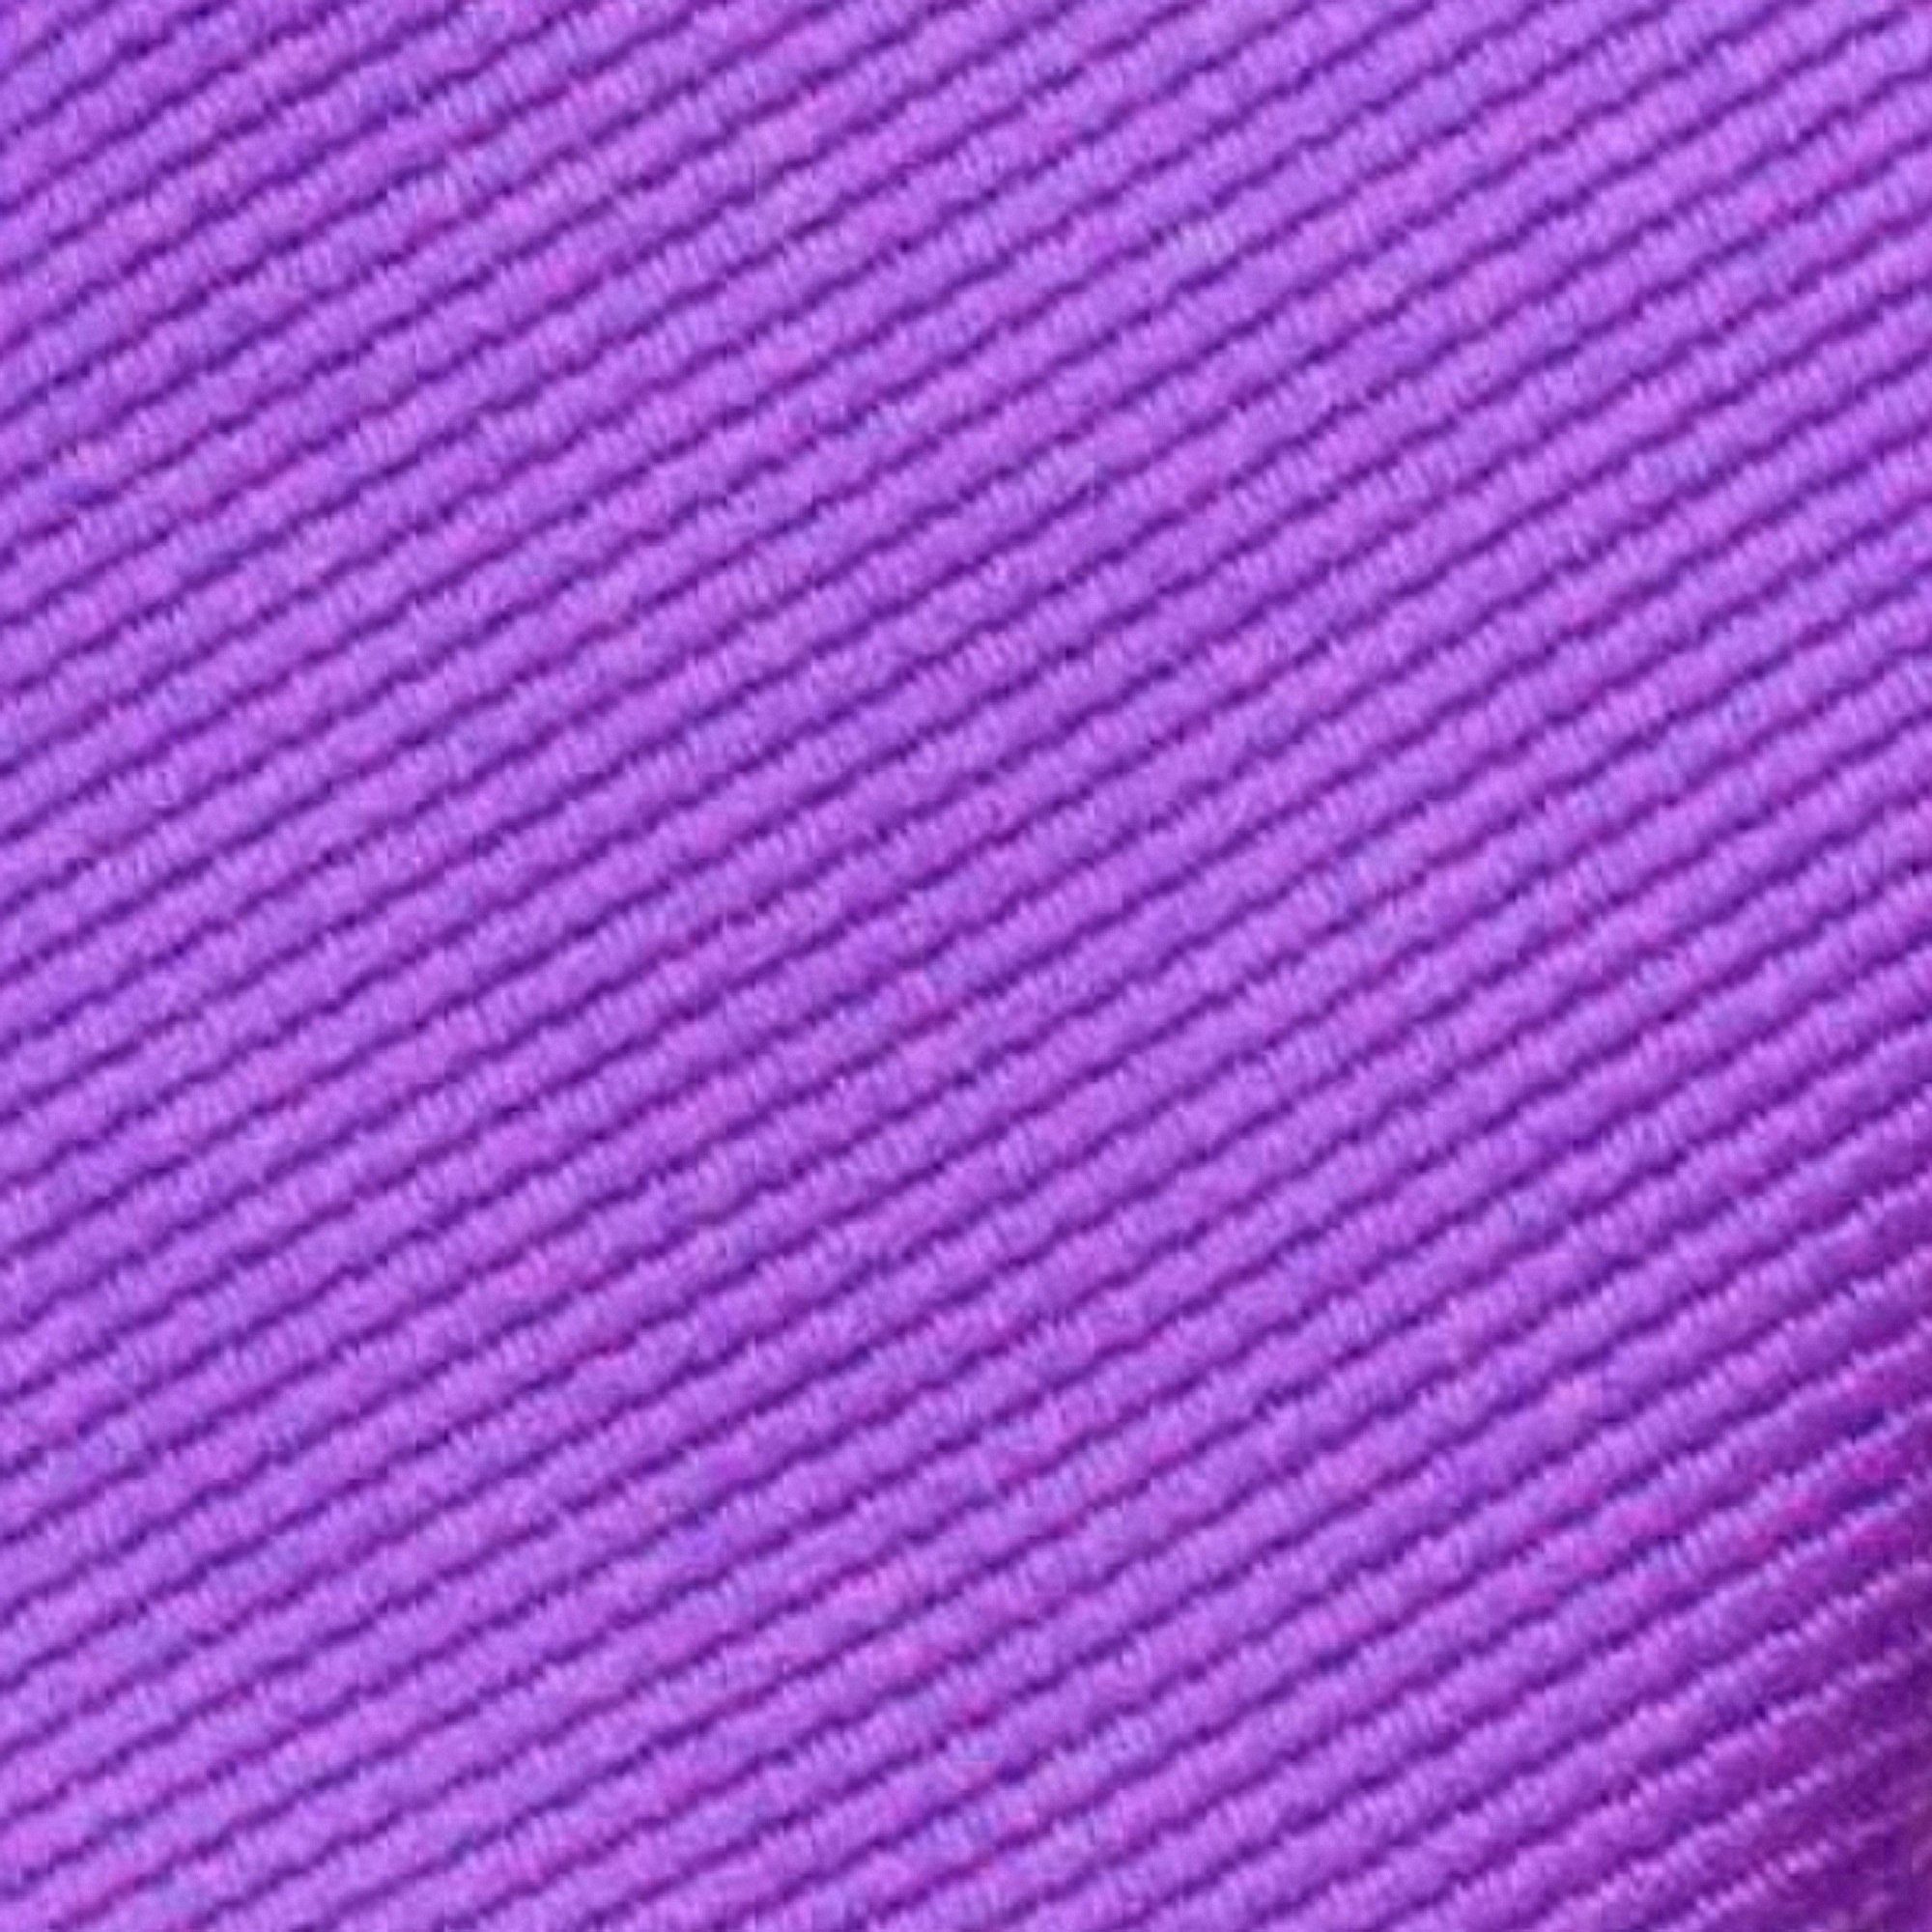 GASSANI Krawatte Schmale Dose Rippen Herren-Krawatte Blau-Lila Lavendel Streifen, Feine 2-St., Männer-Schlips Männer (set, Uni In Geschenkverpackung) Blech-Spardose, mit Slim-Fit Mauve Geschenk-Box Gestreifte Flieder-Violett Seide-Touch Business-Krawatte, Rips